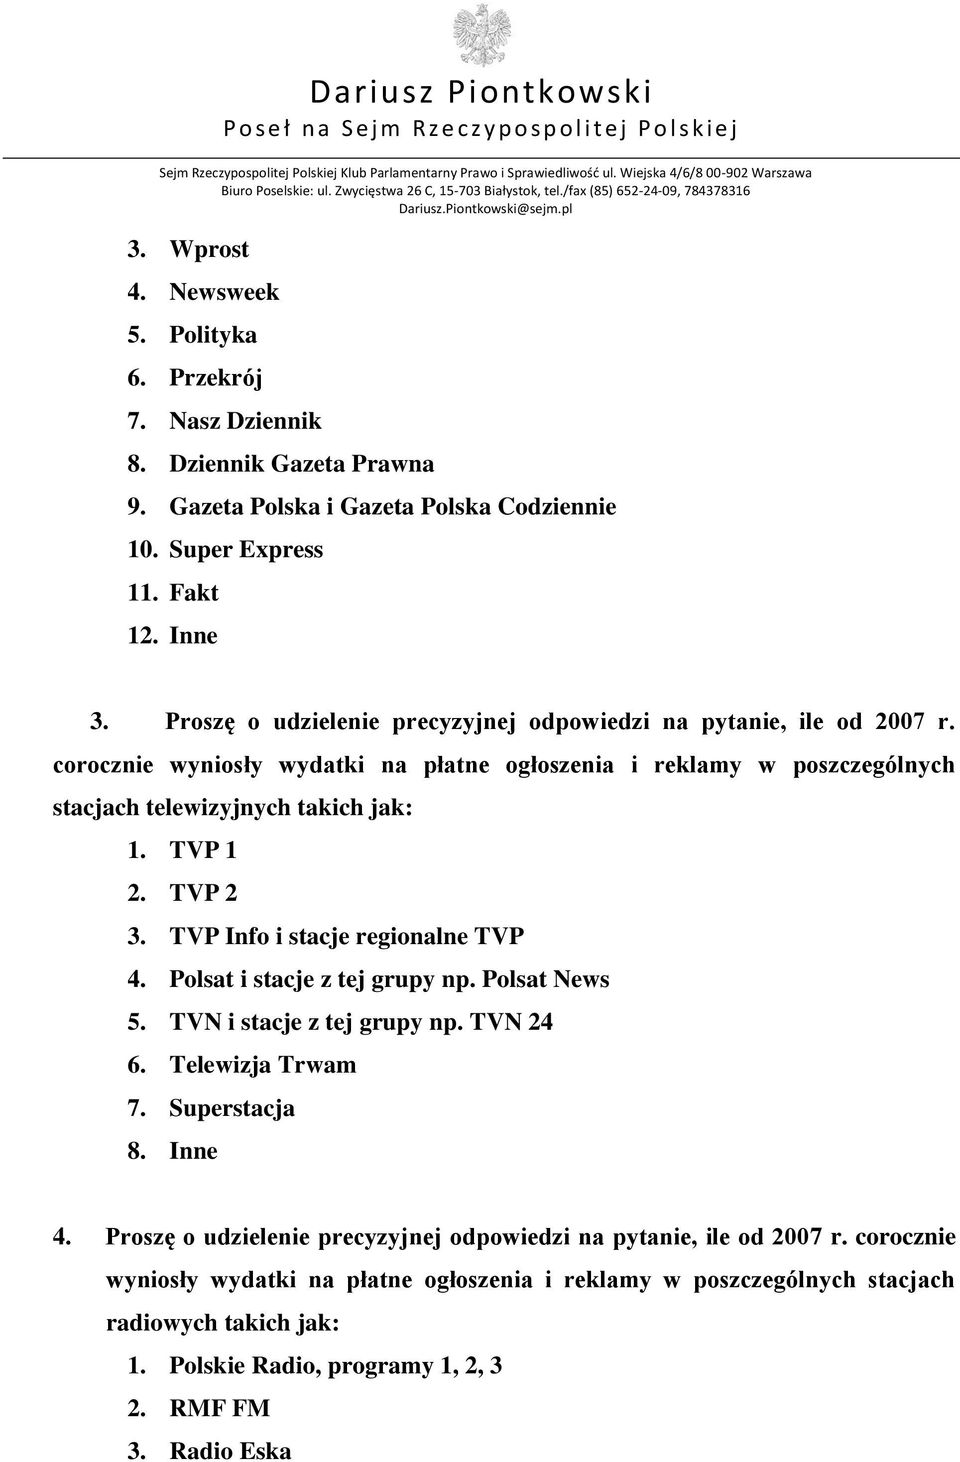 TVP 2 3. TVP Info i stacje regionalne TVP 4. Polsat i stacje z tej grupy np. Polsat News 5. TVN i stacje z tej grupy np. TVN 24 6. Telewizja Trwam 7. Superstacja 8. Inne 4.